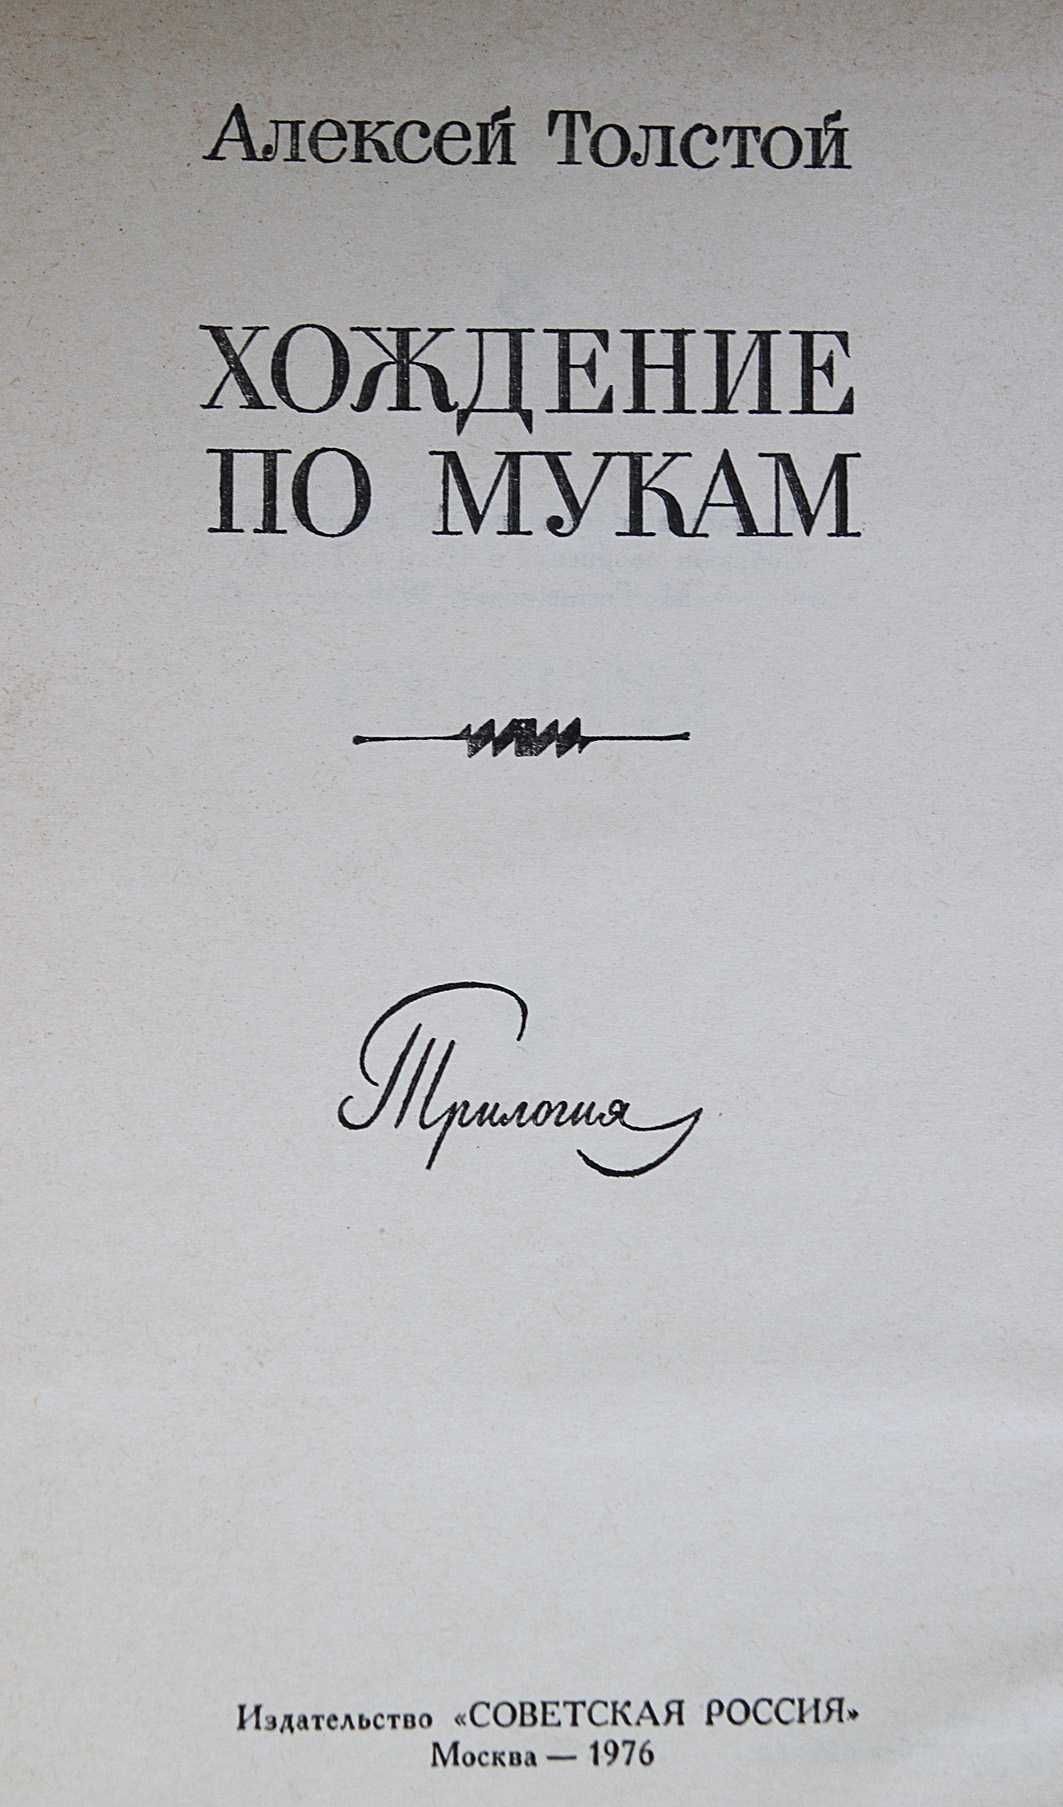 Книга Алексей Толстой Хождения по мукам 70 грн.